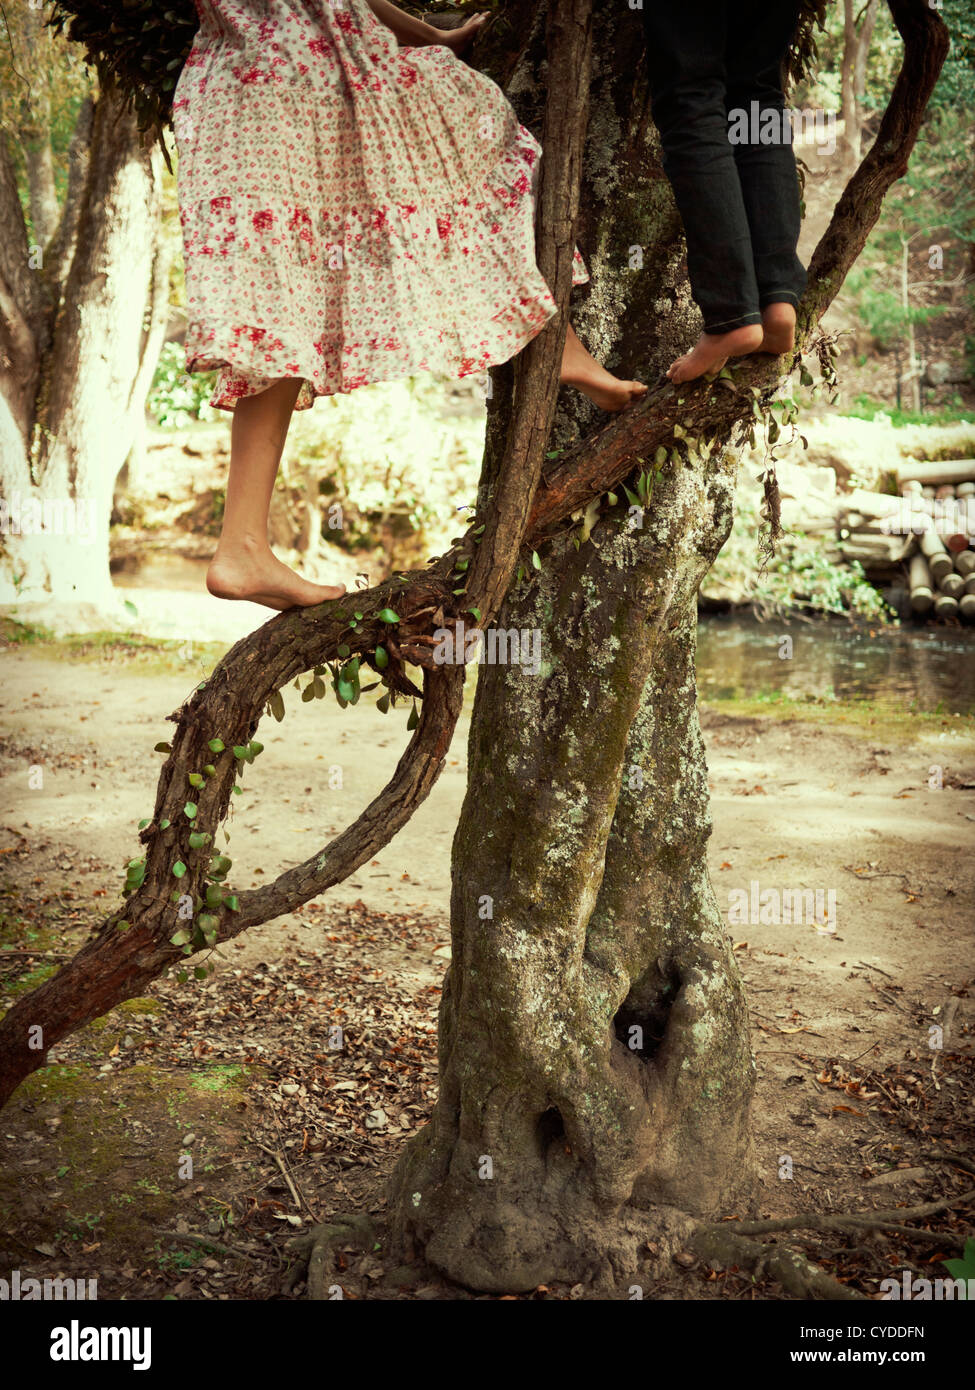 Girl and boy climb tree Stock Photo